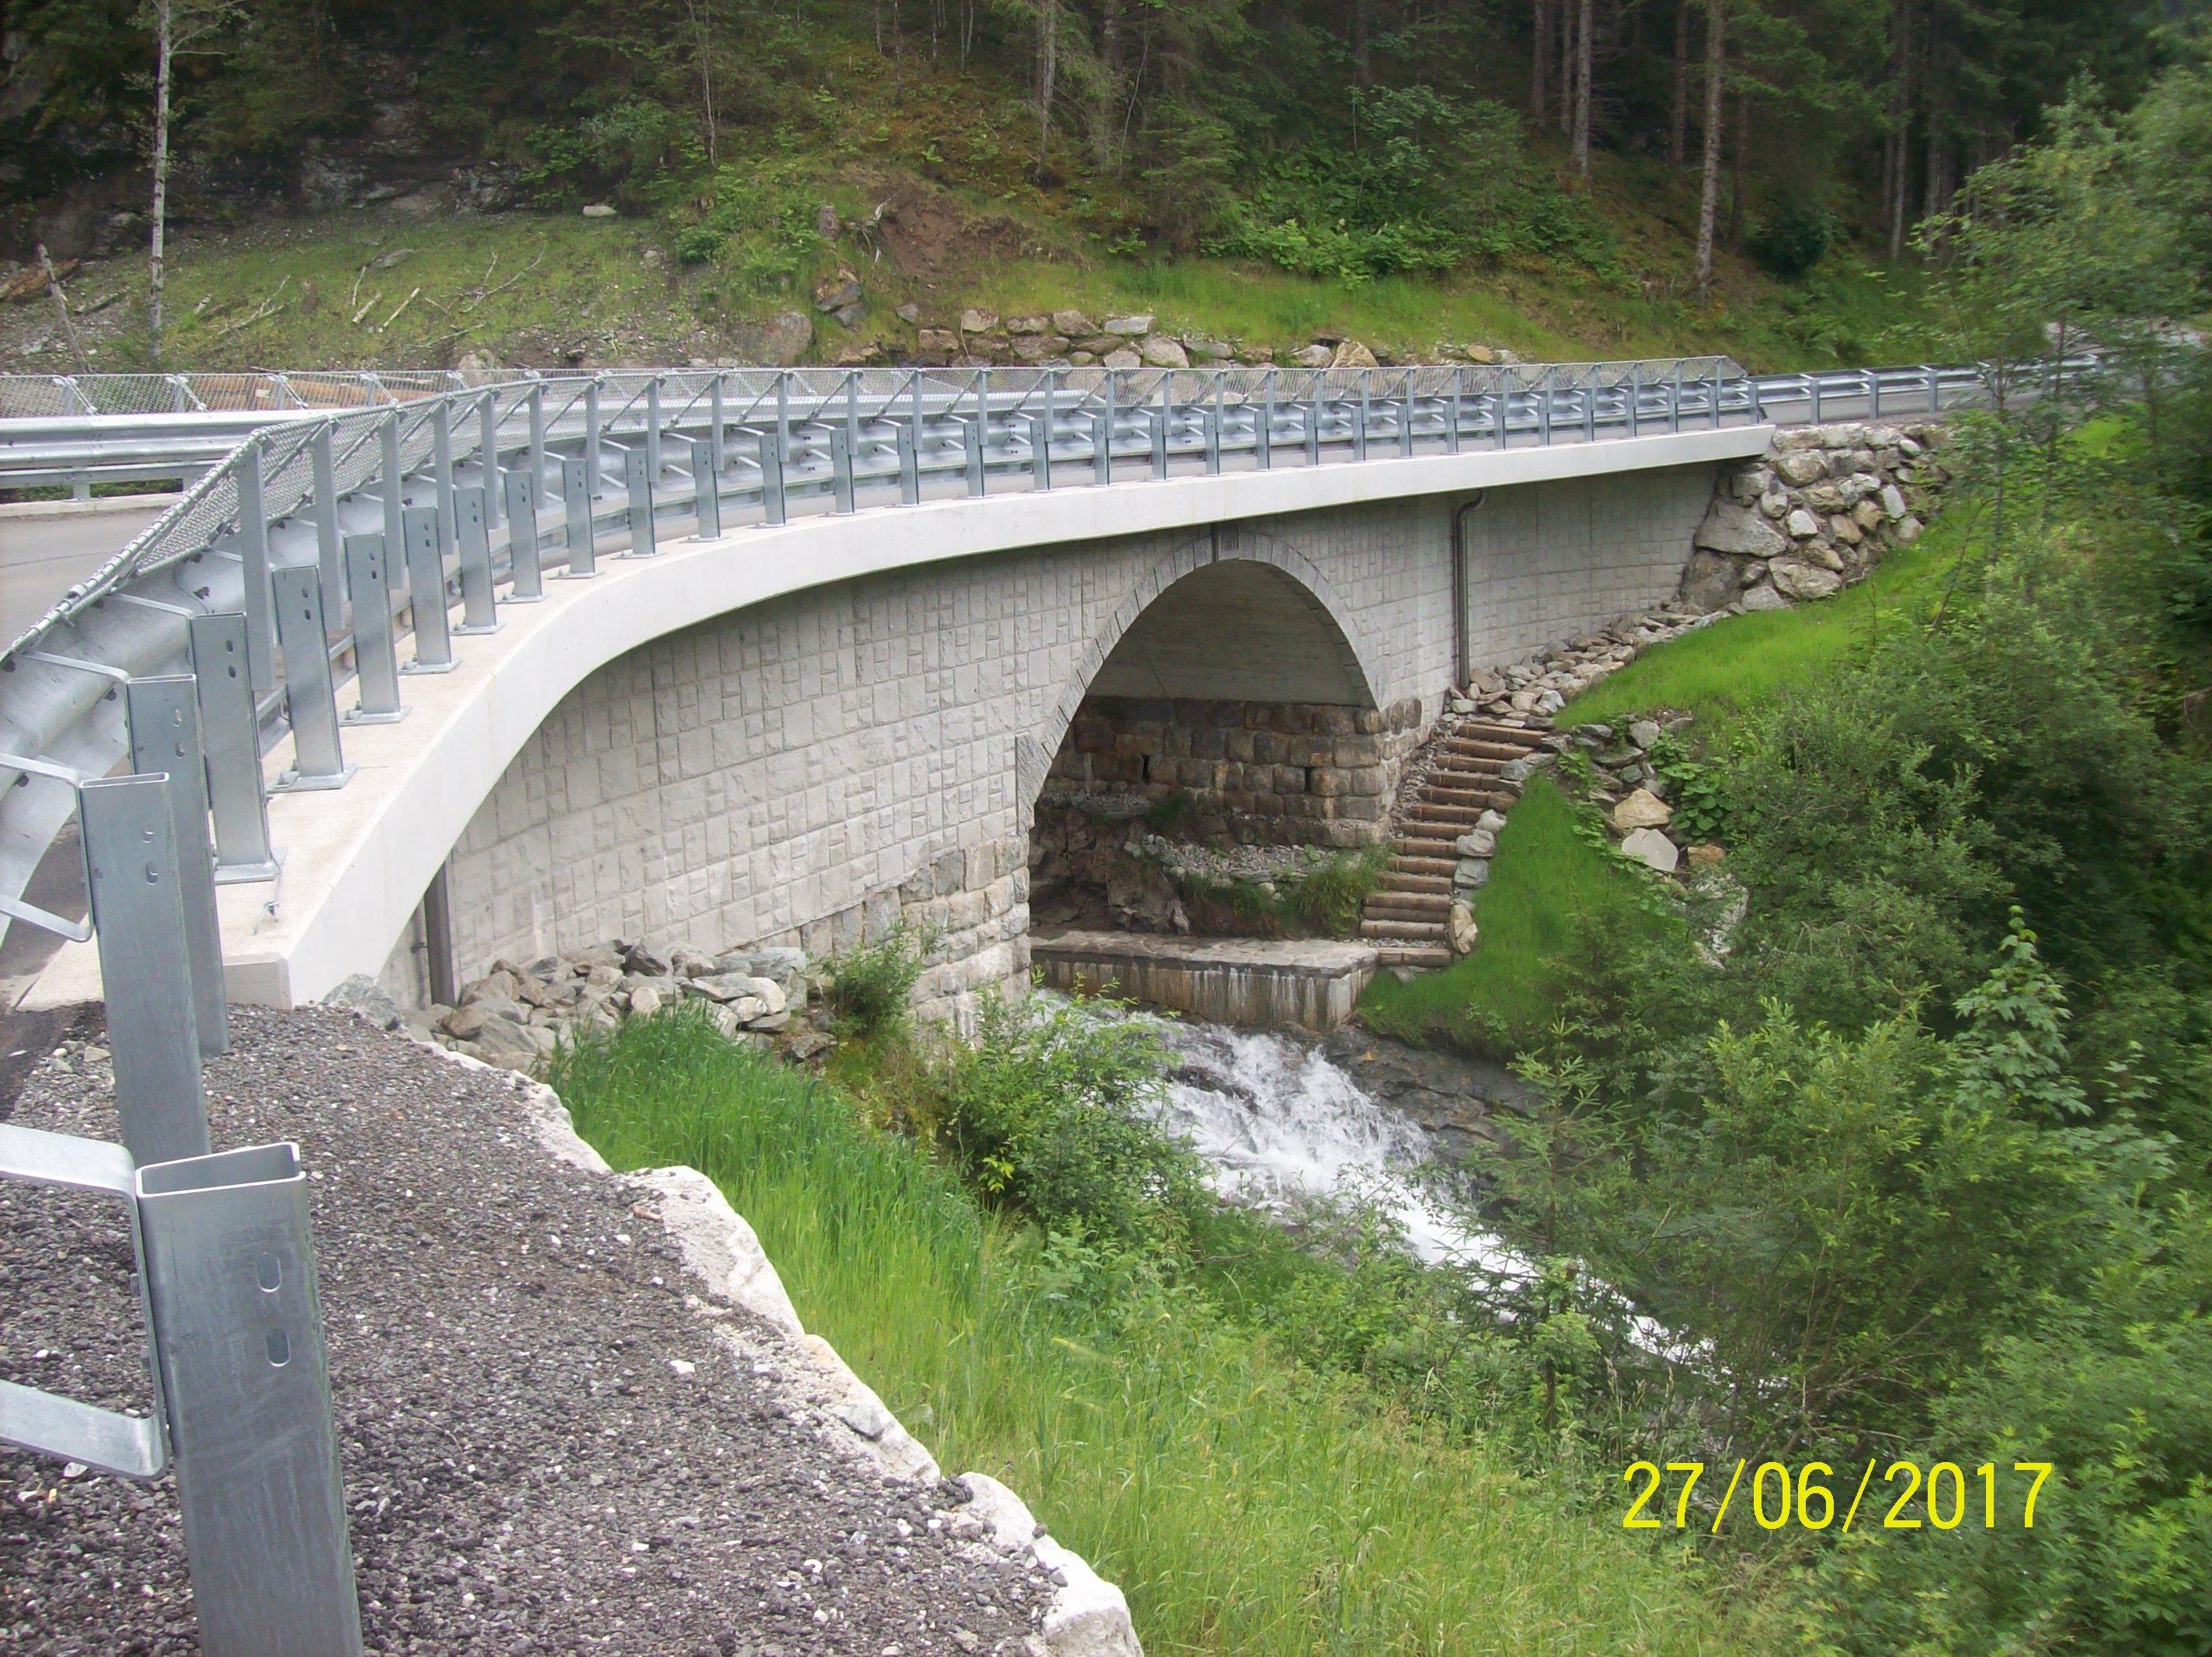 Schrabachbrücke auf der L264 Stubachtalstraße in Uttendorf - Road and bridge construction